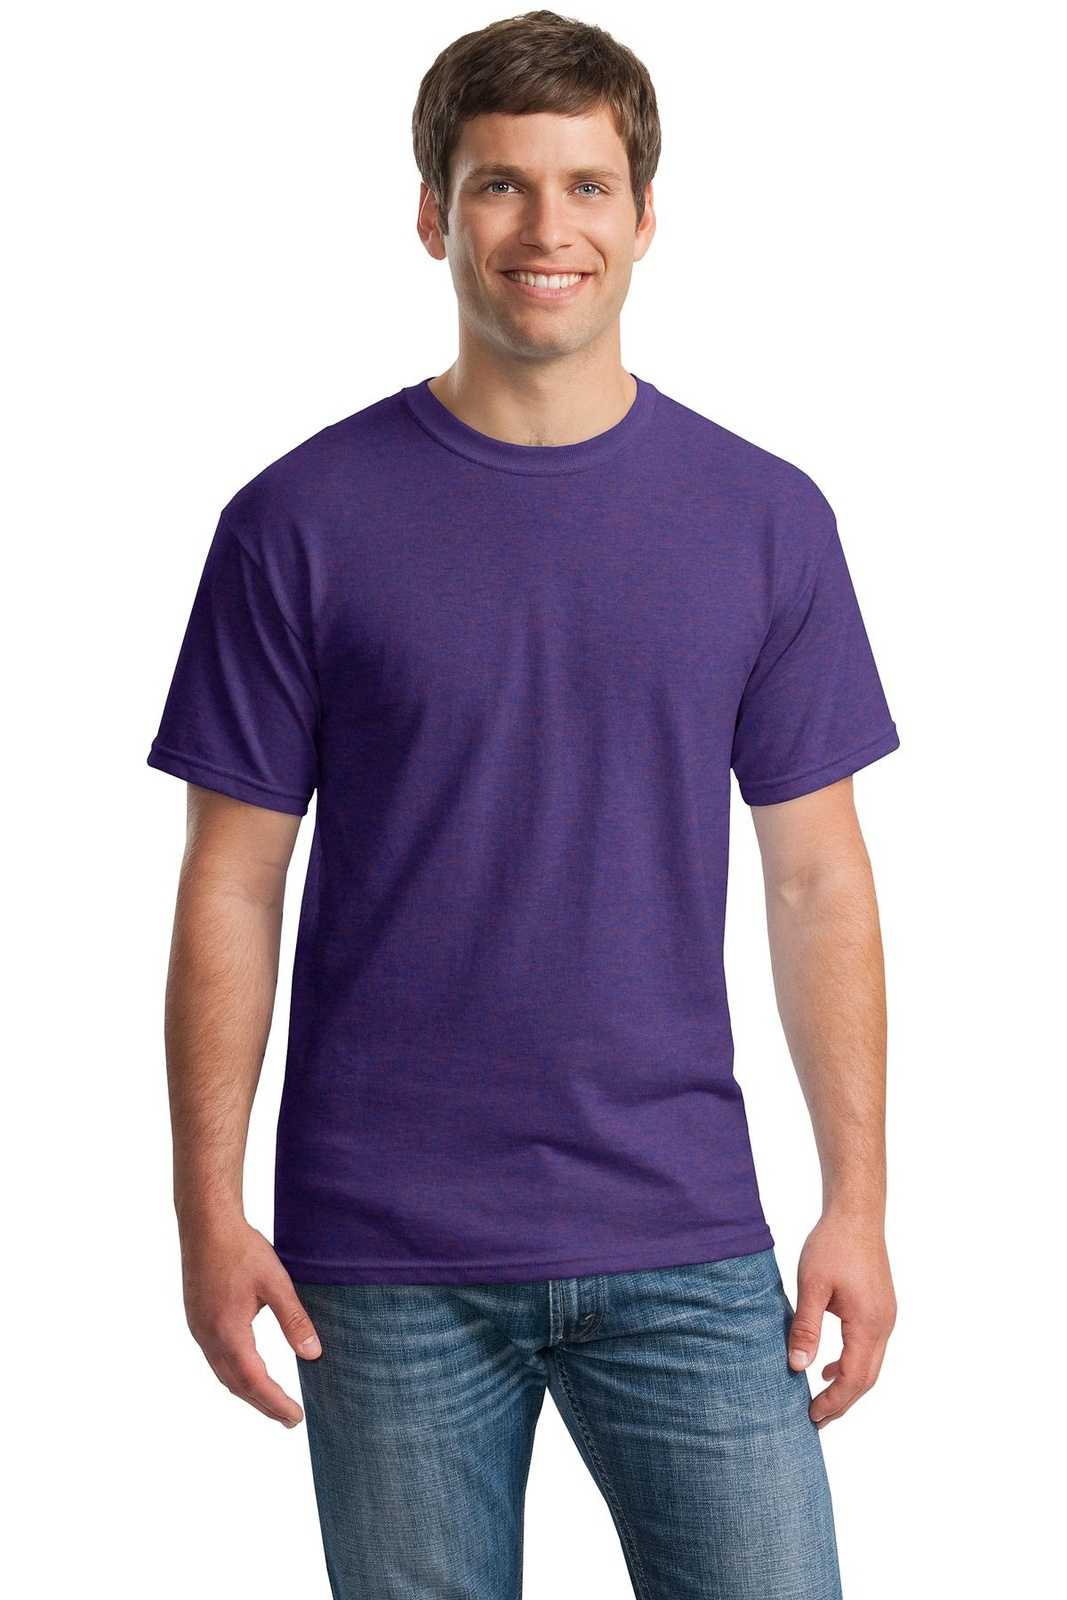 Gildan 5000 Heavy Cotton 100% Cotton T-Shirt - Lilac - HIT a Double